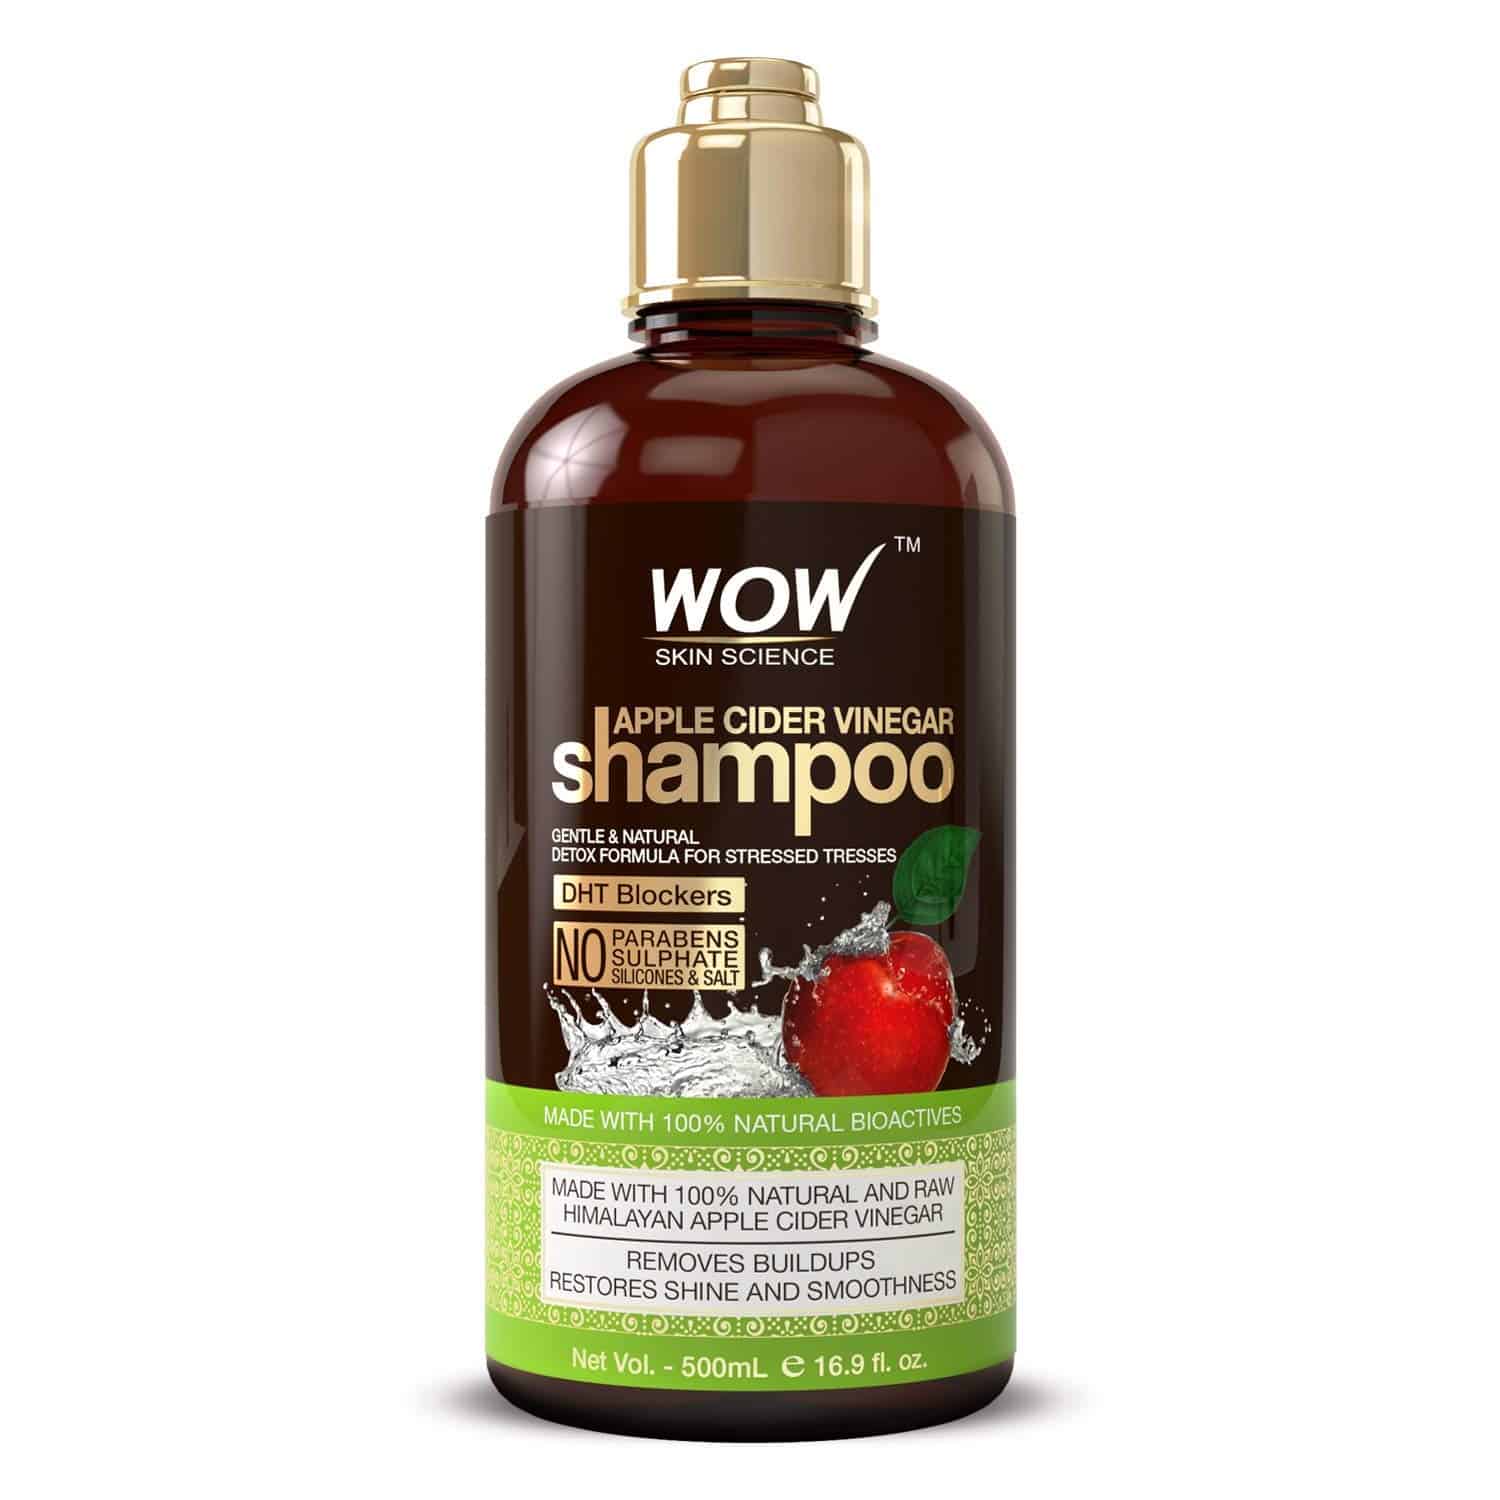 Wow shampoo